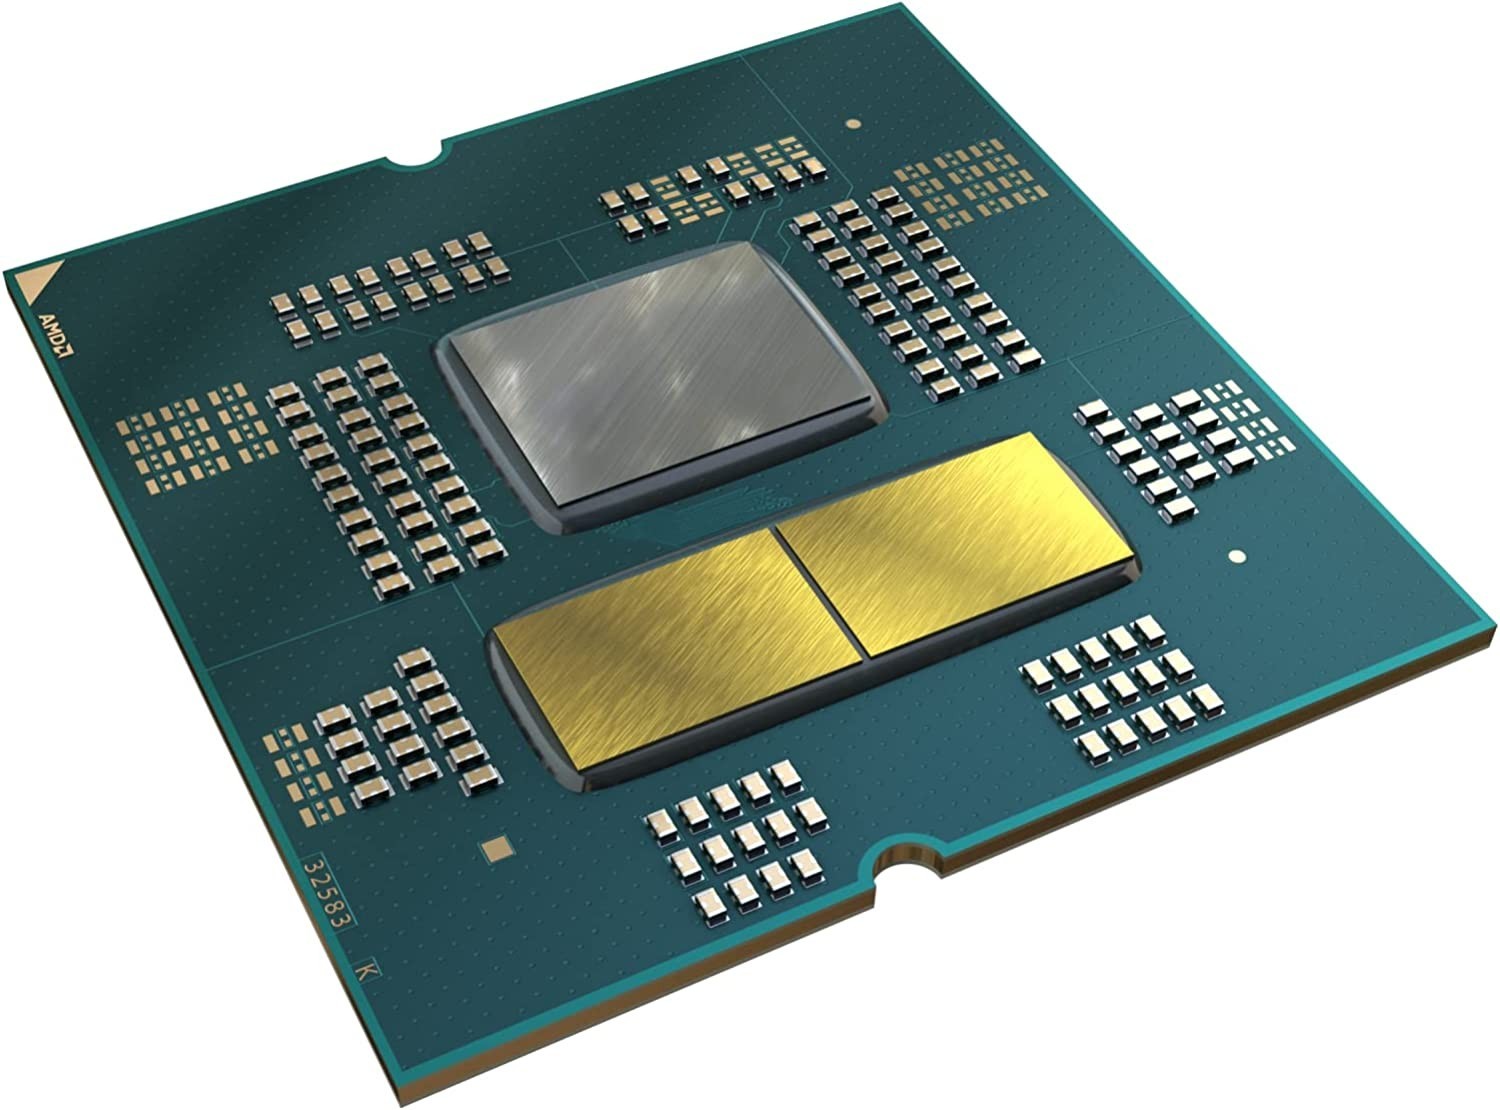 Processeur - AMD Ryzen 5 7600X (4.7 GHz / 5.3 GHz) - Tunisie